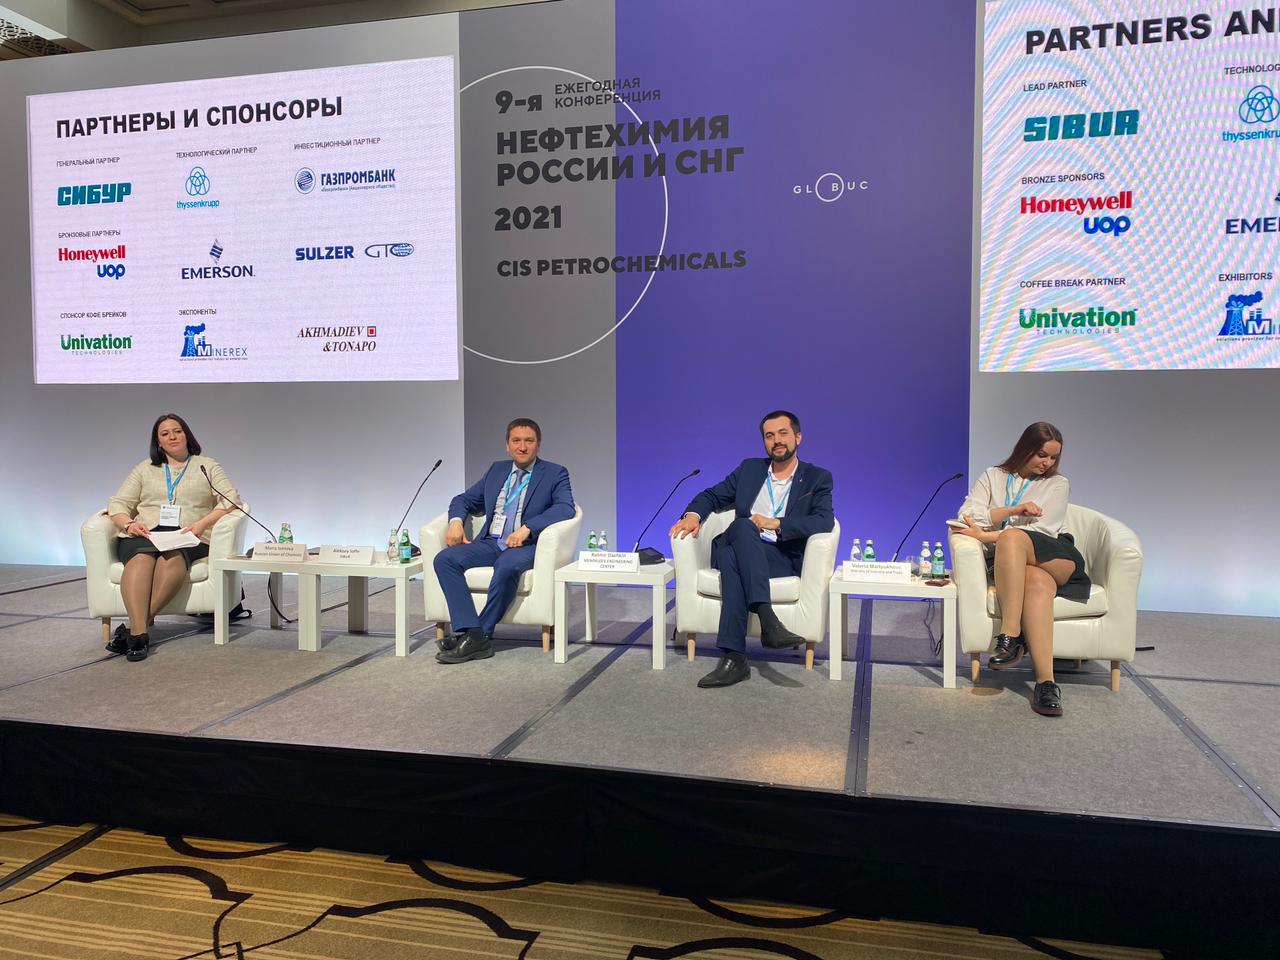 На конференции «Нефтехимия России и СНГ» Ратмир Дашкин рассказал о потенциале развития малотоннажной химической промышленности в России